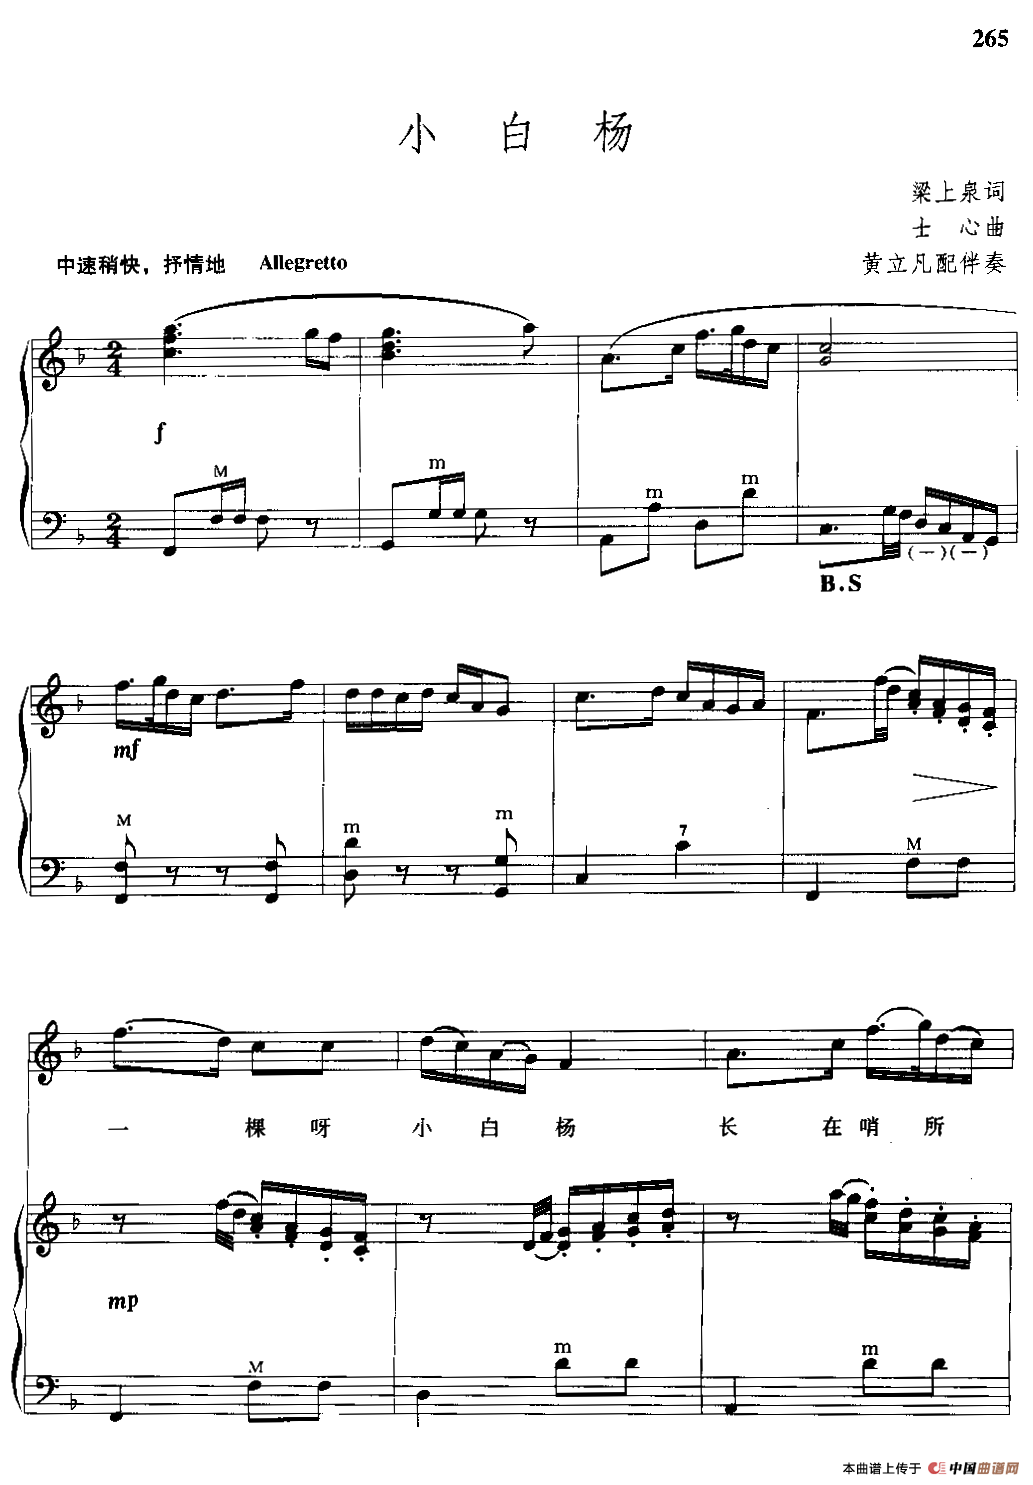 小白杨（手风琴伴奏谱）(1)_000265.png